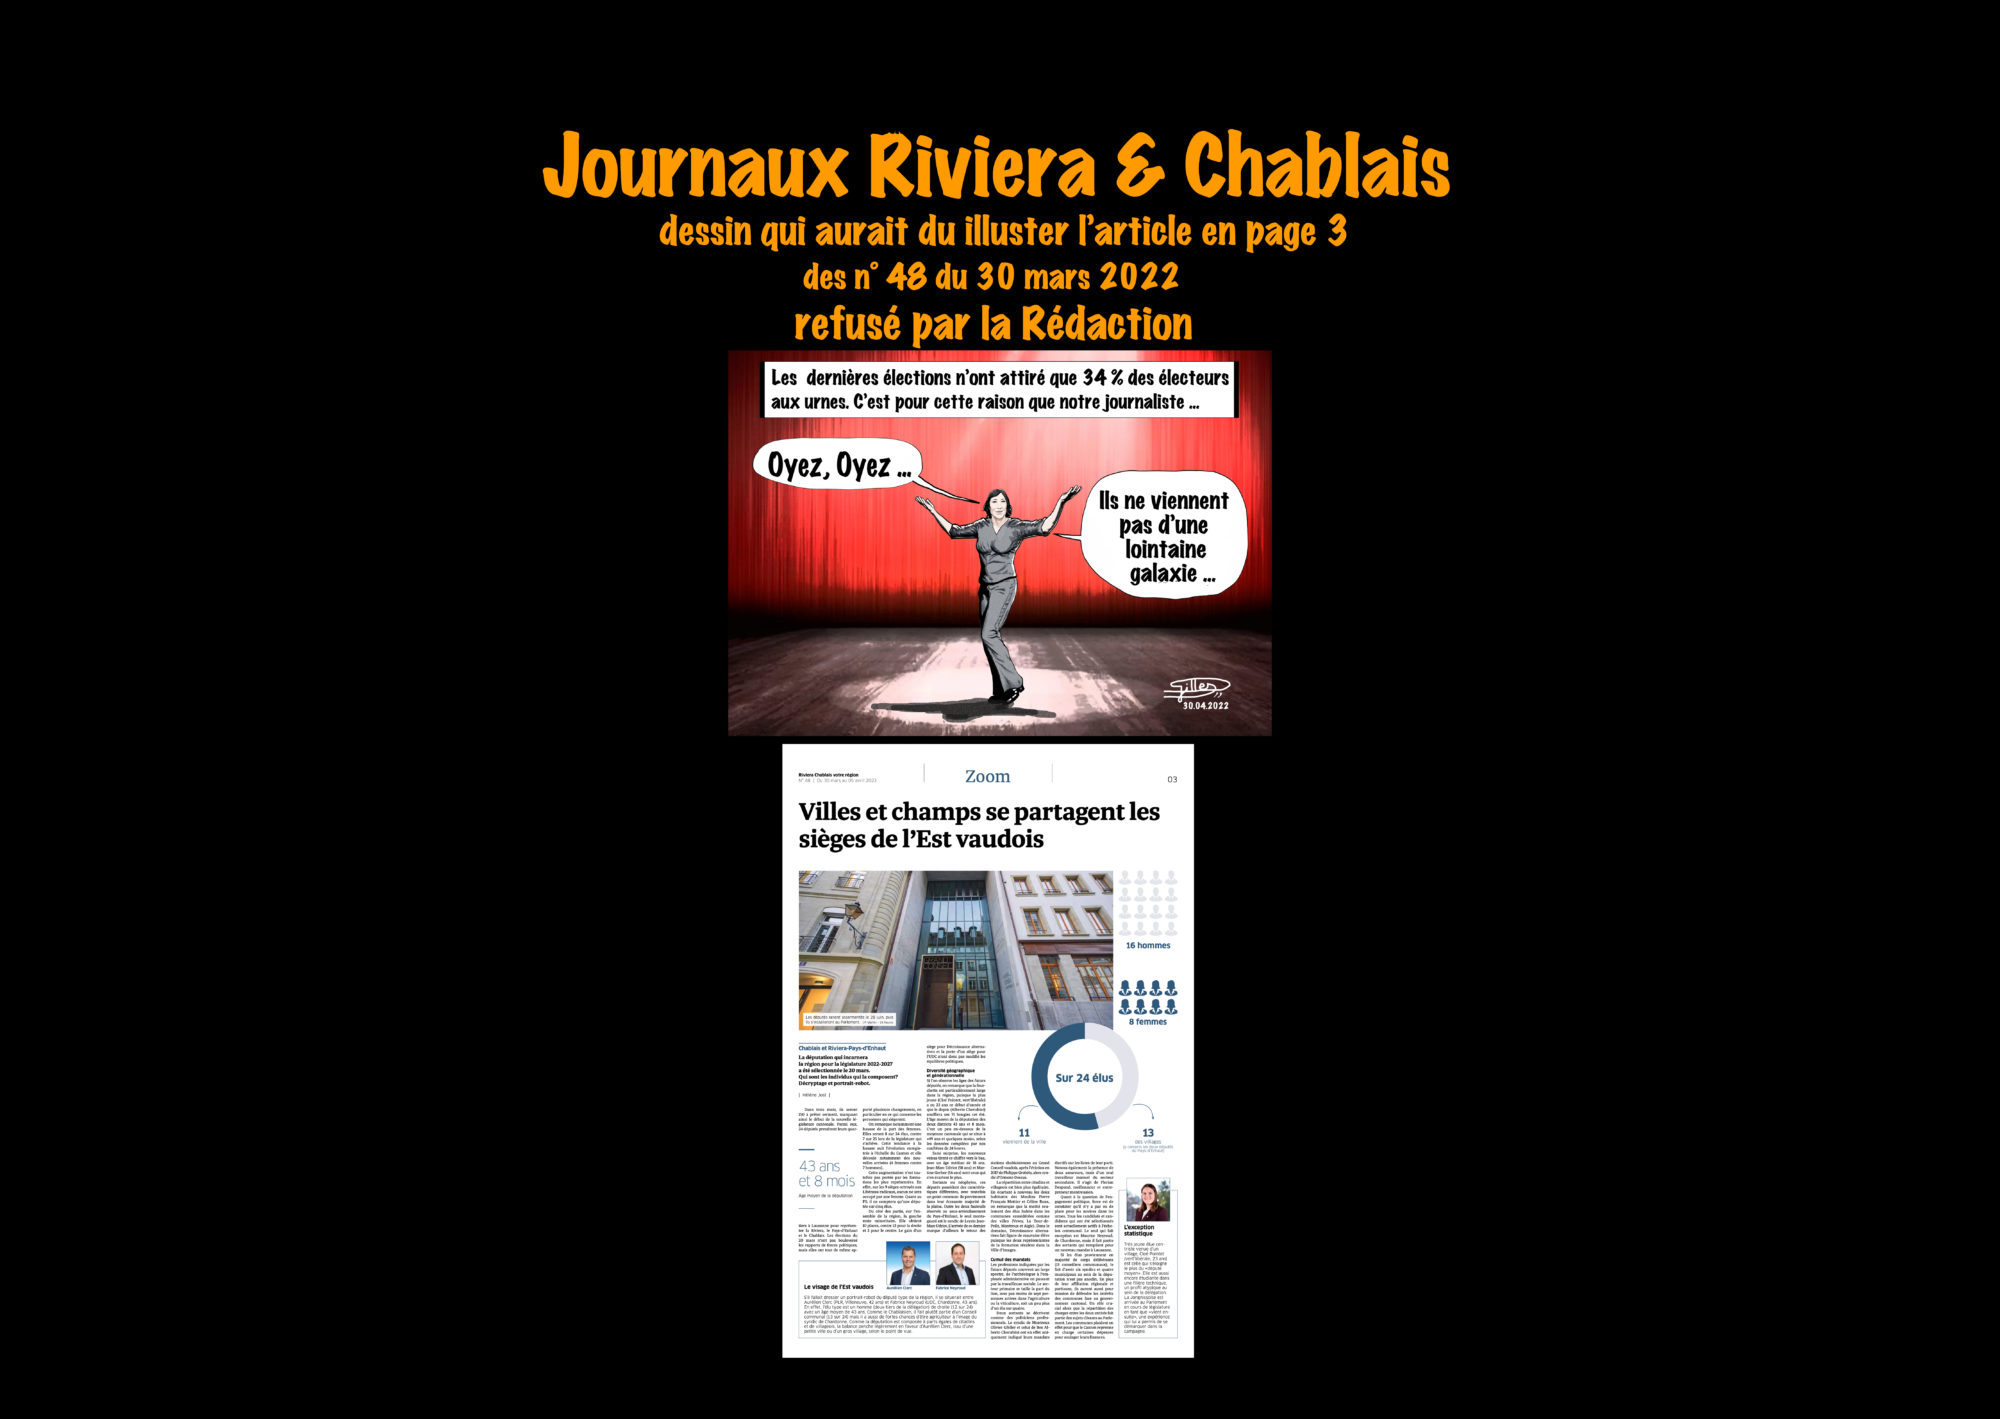 Journaux Riviera & Chablais n° 48 ©Dessin de Gilles,, refusé par la Rédaction pour l'article sur Villes et Champs se partagent les sièges de l'Est vaudois du 30 mars 2022 A3